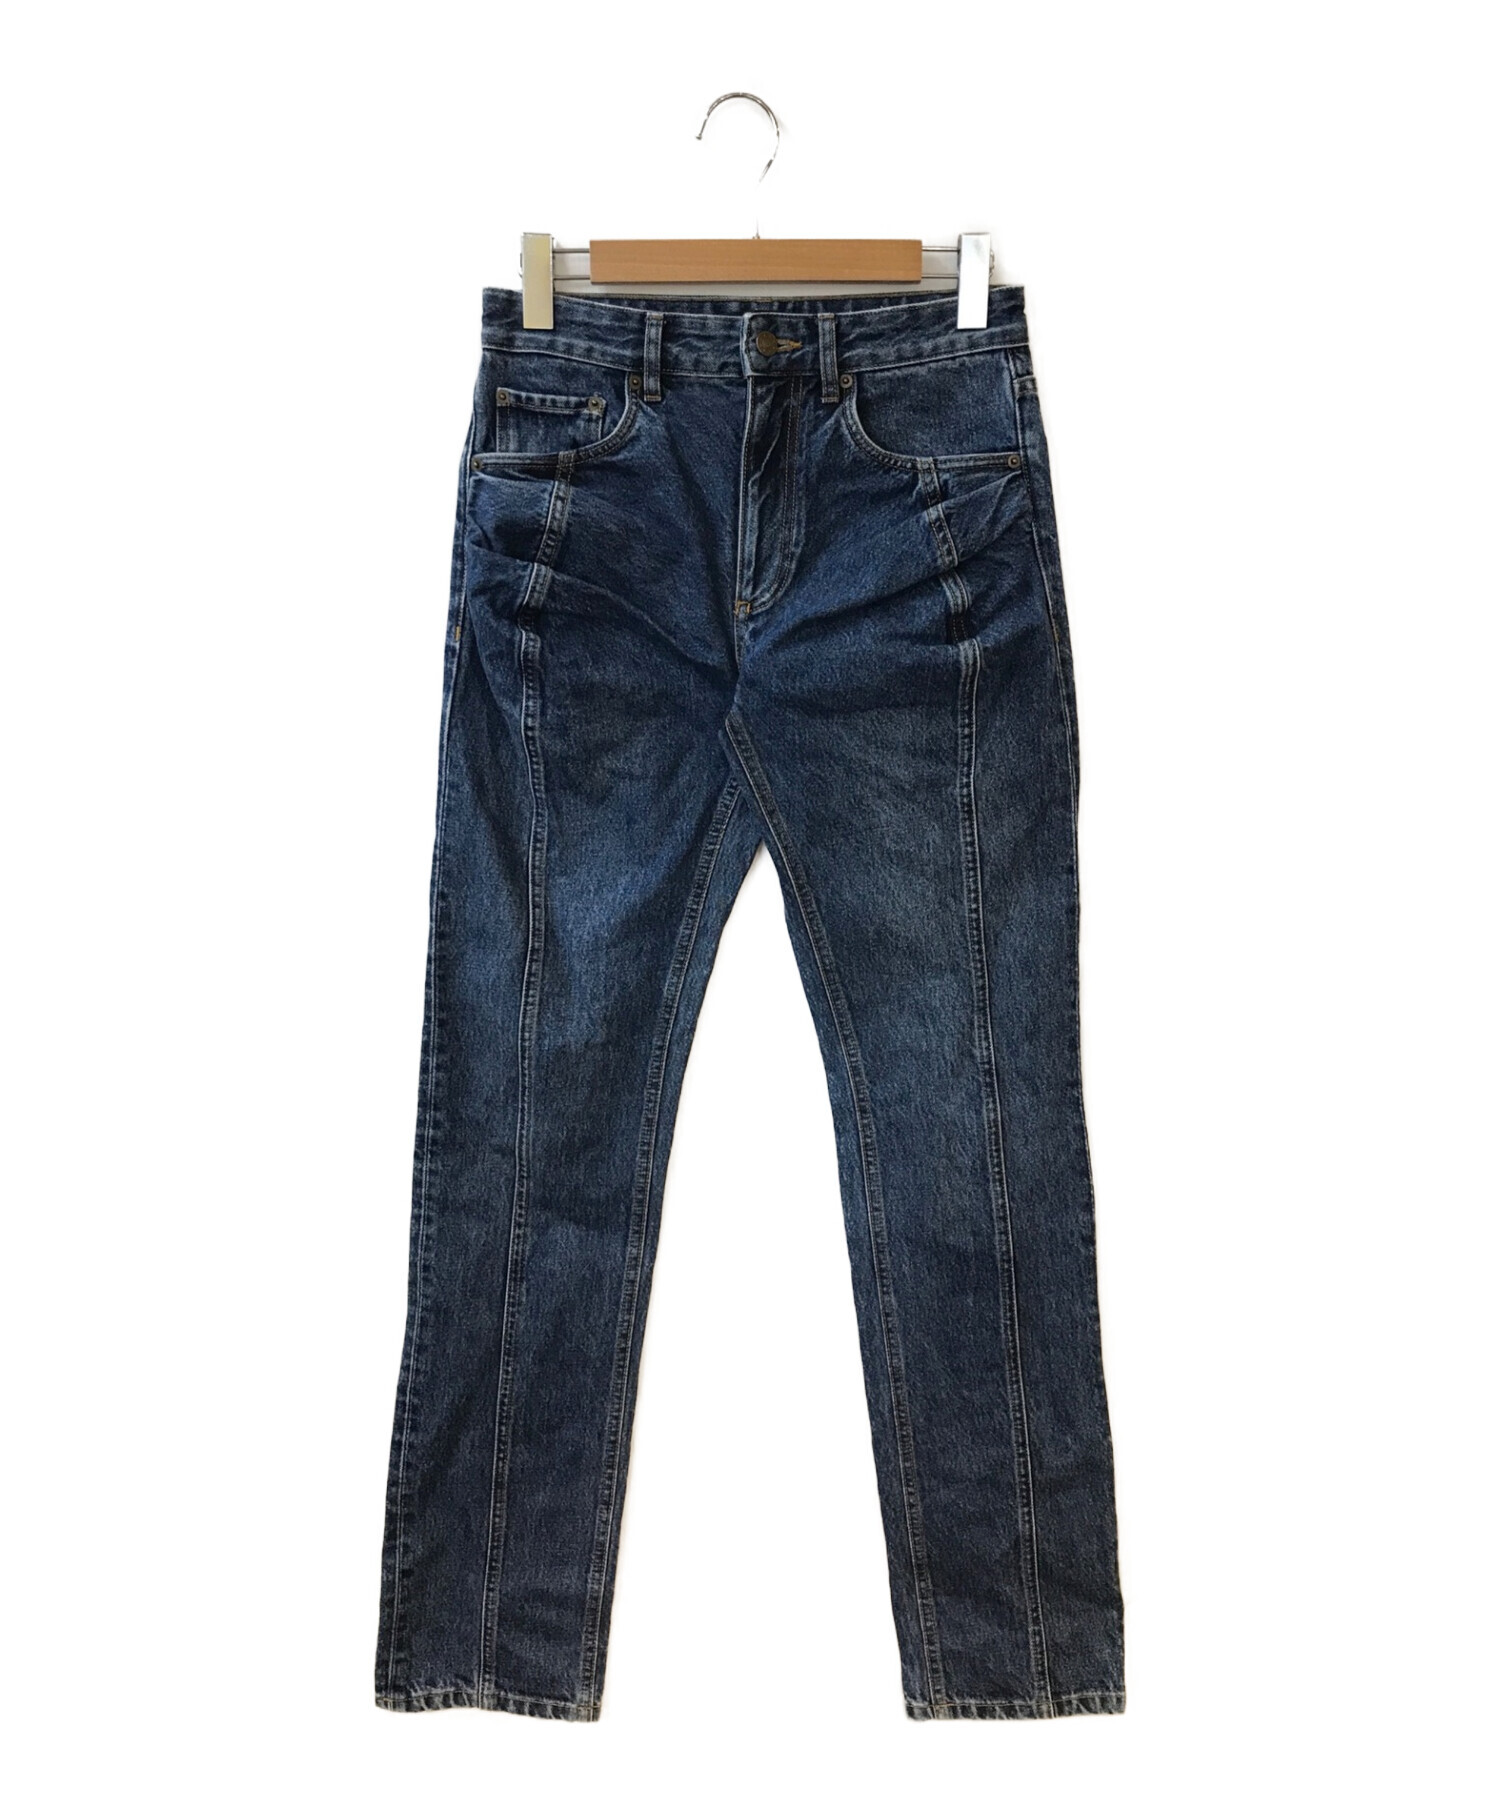 股上26cmy/project Ruffle Pocket Jeans (20AW)/デニム